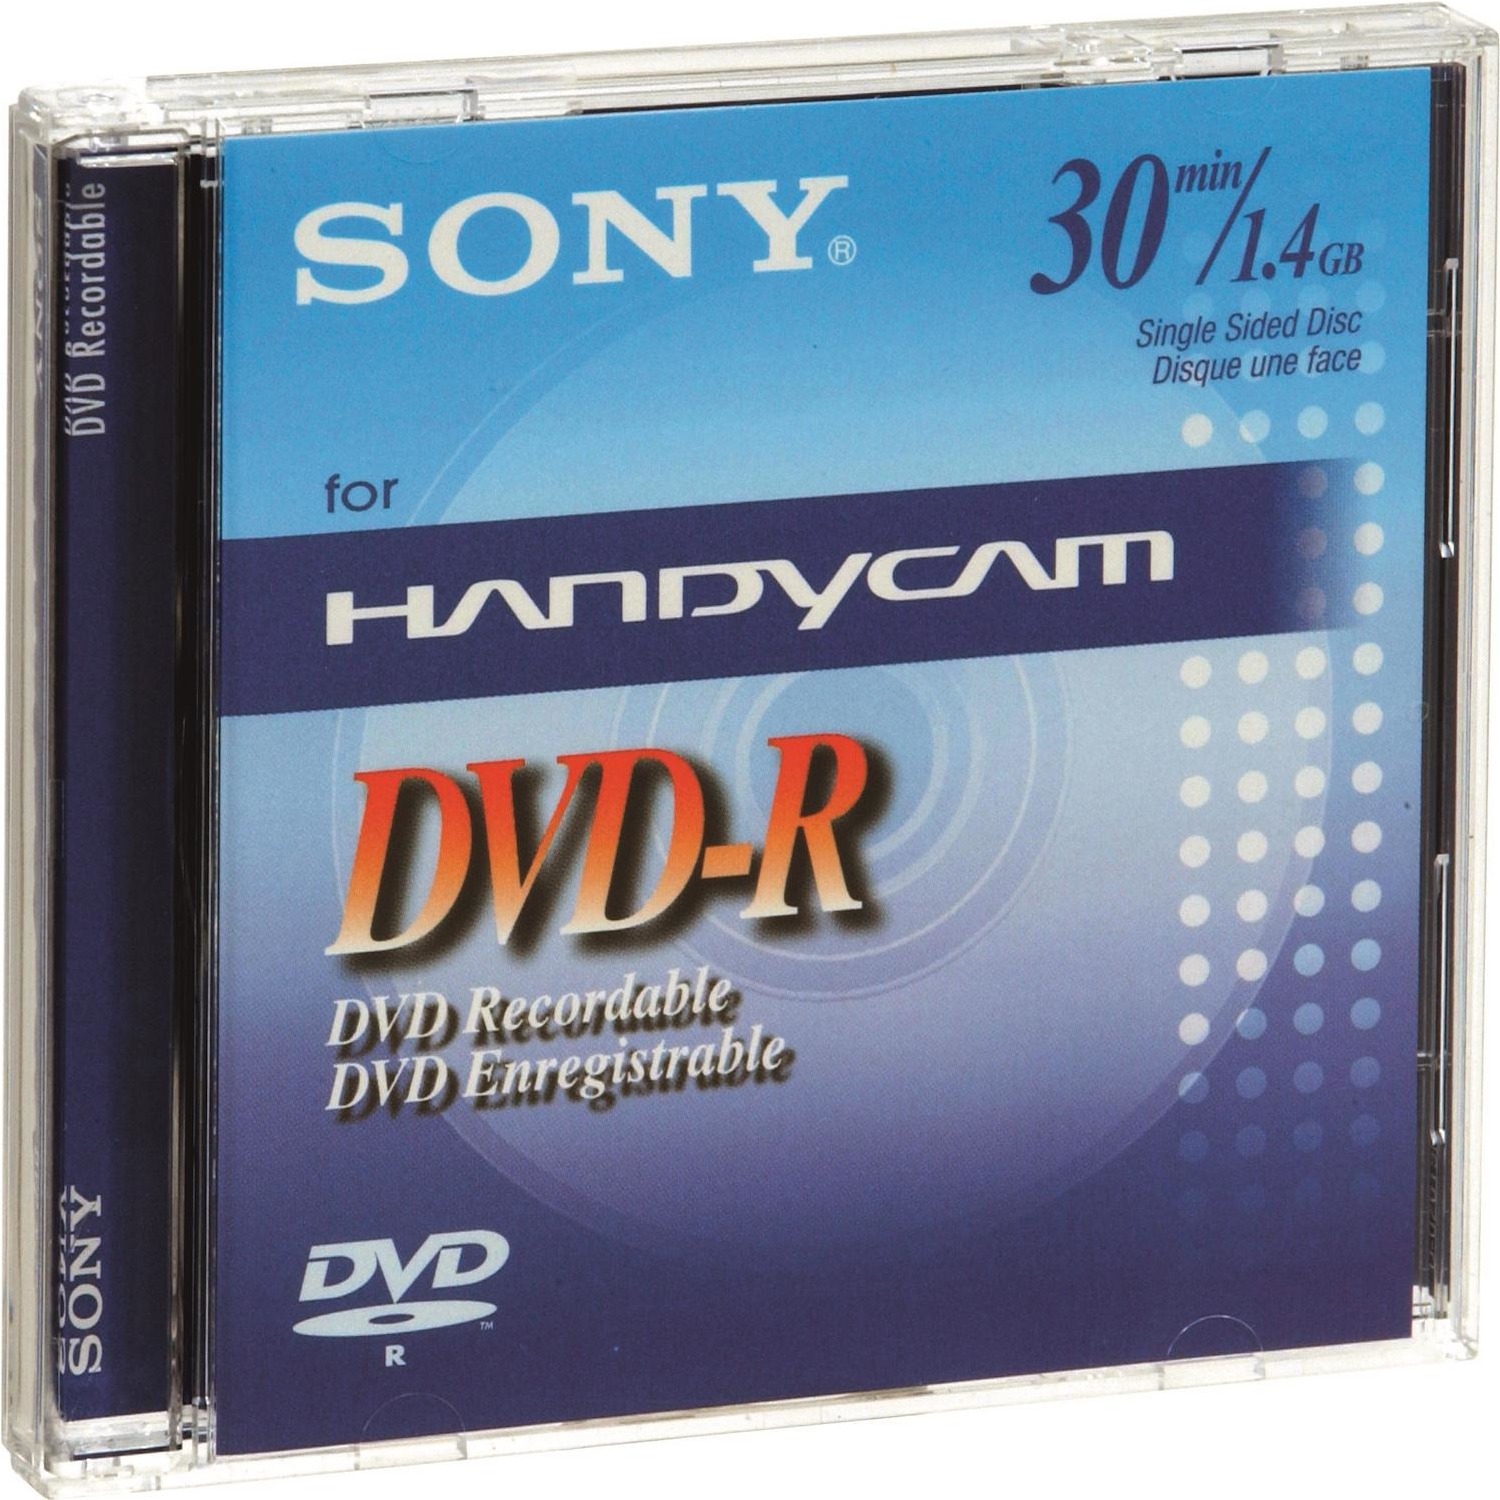 Immagine per DVD registrabile Sony DMR 30 per DVC da DIMOStore